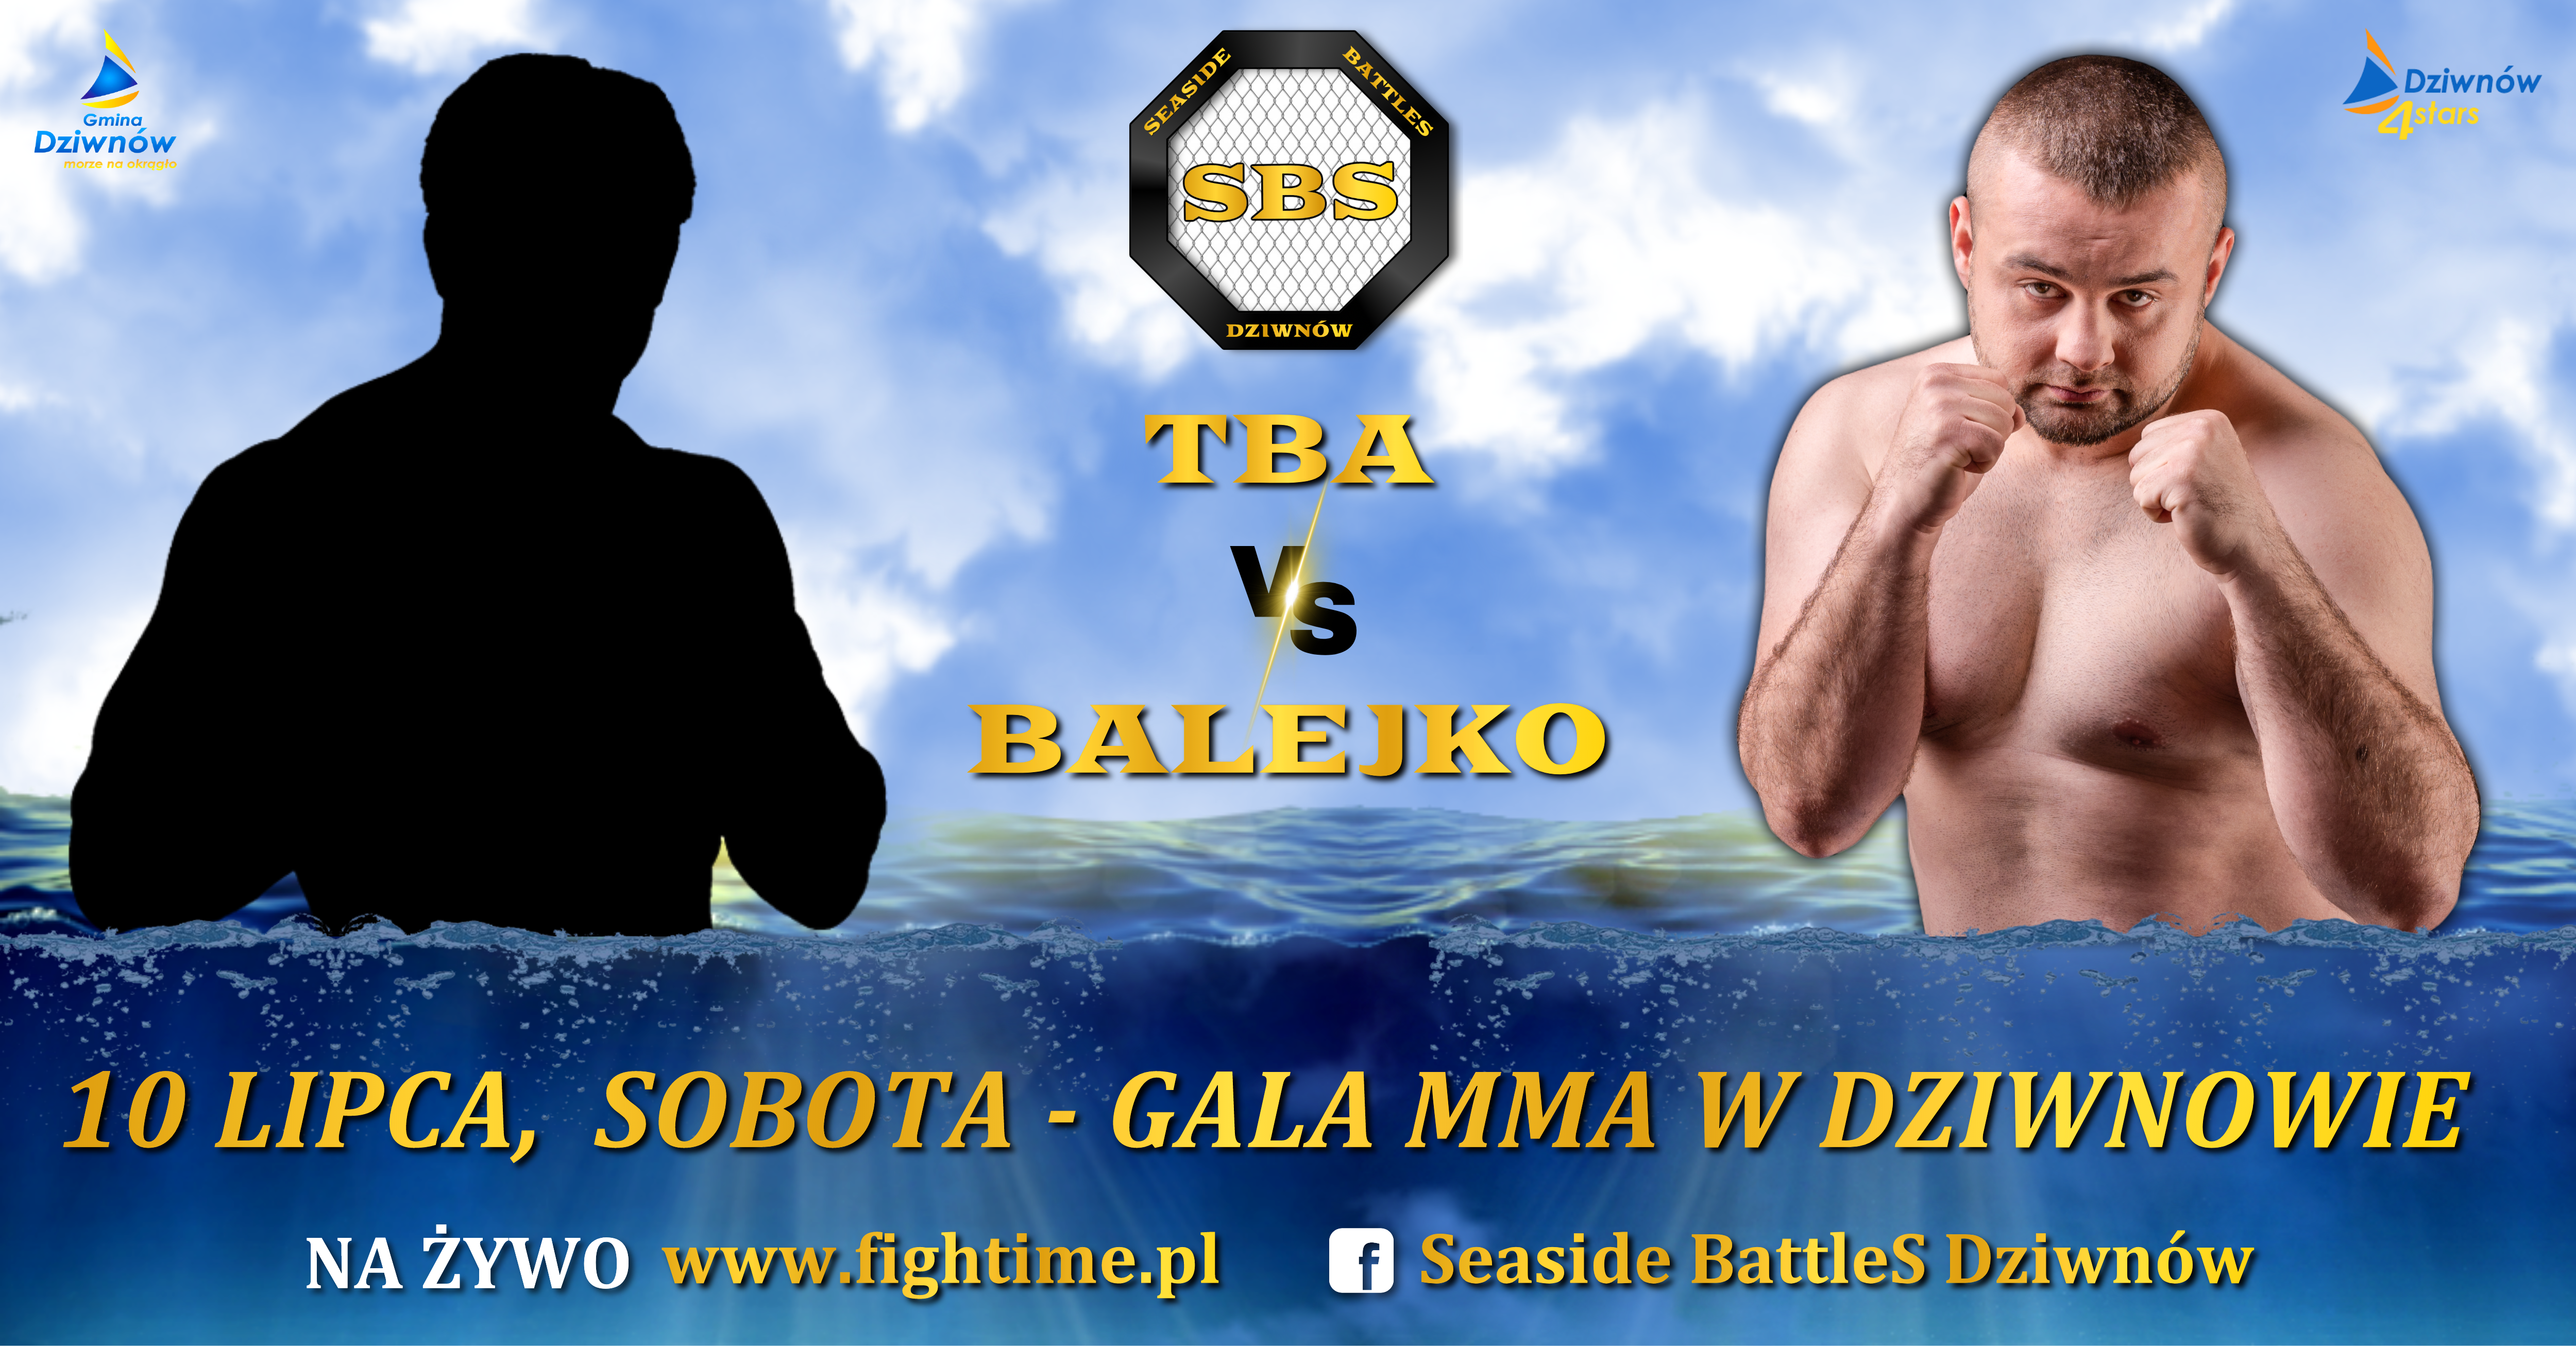 Balejko Seaside Battles